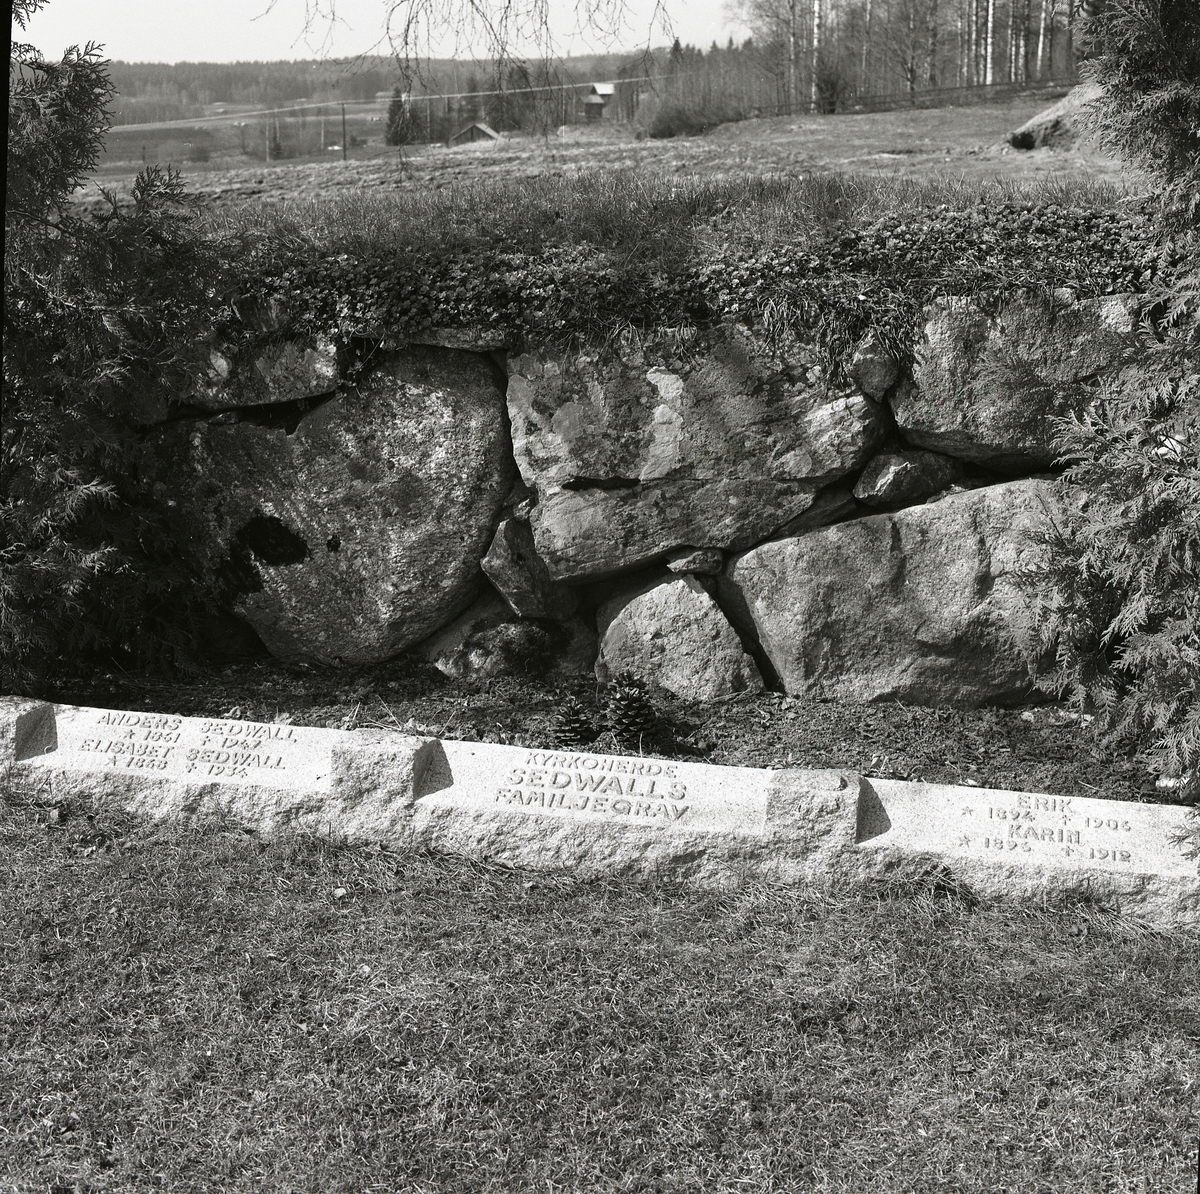 Sedvalls familjegrav på Rengsjö kyrkogård. Kristi himmelsfärd, 7 maj 1986.